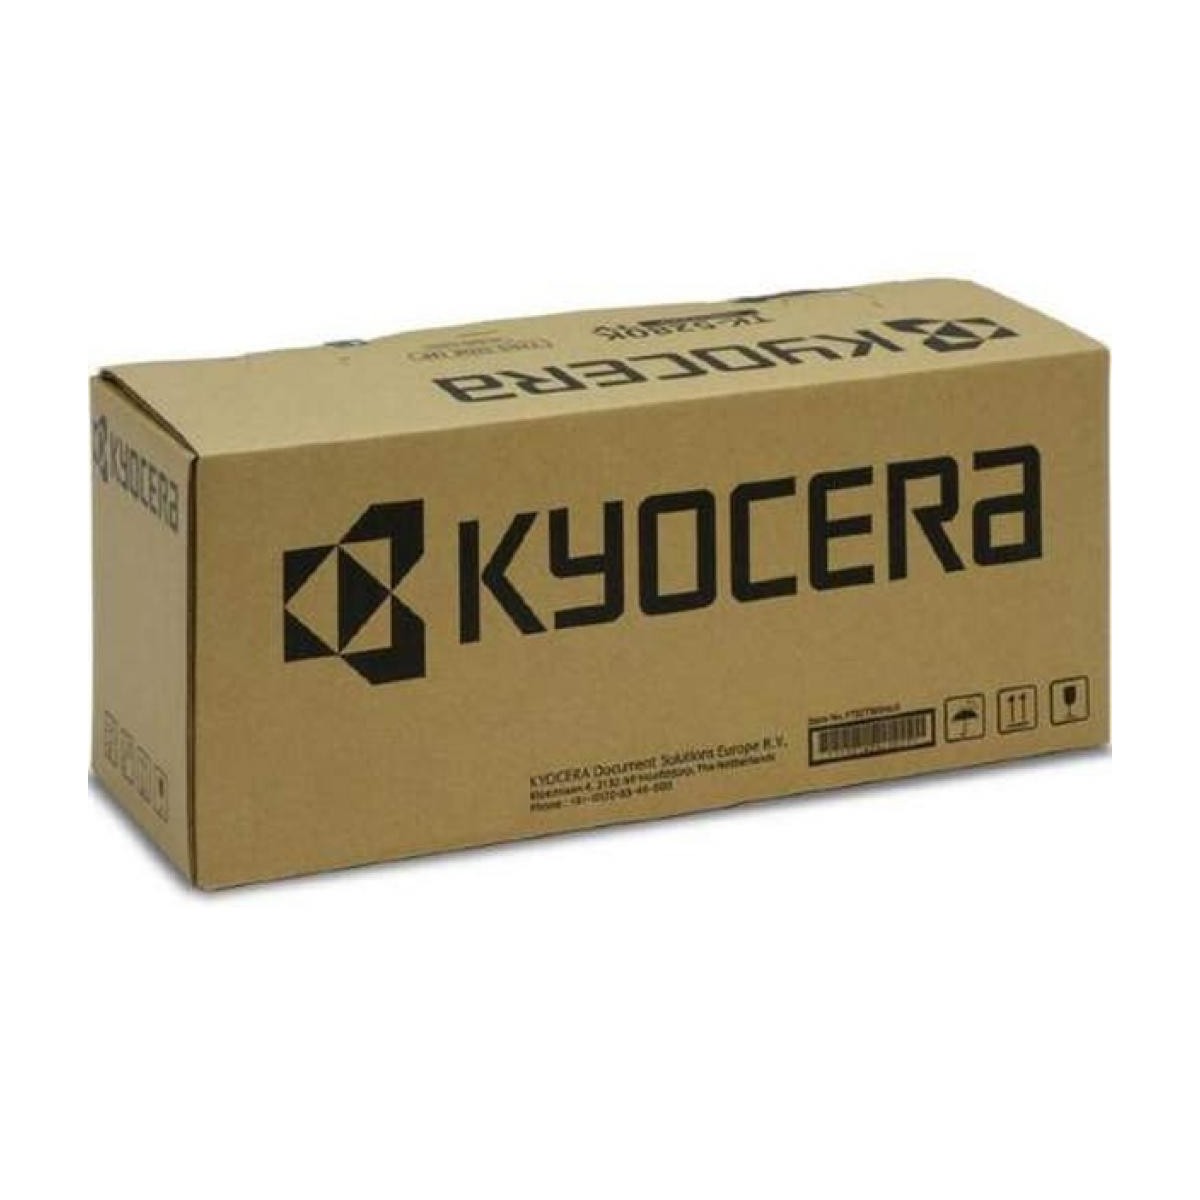 Kyocera Developer Magenta